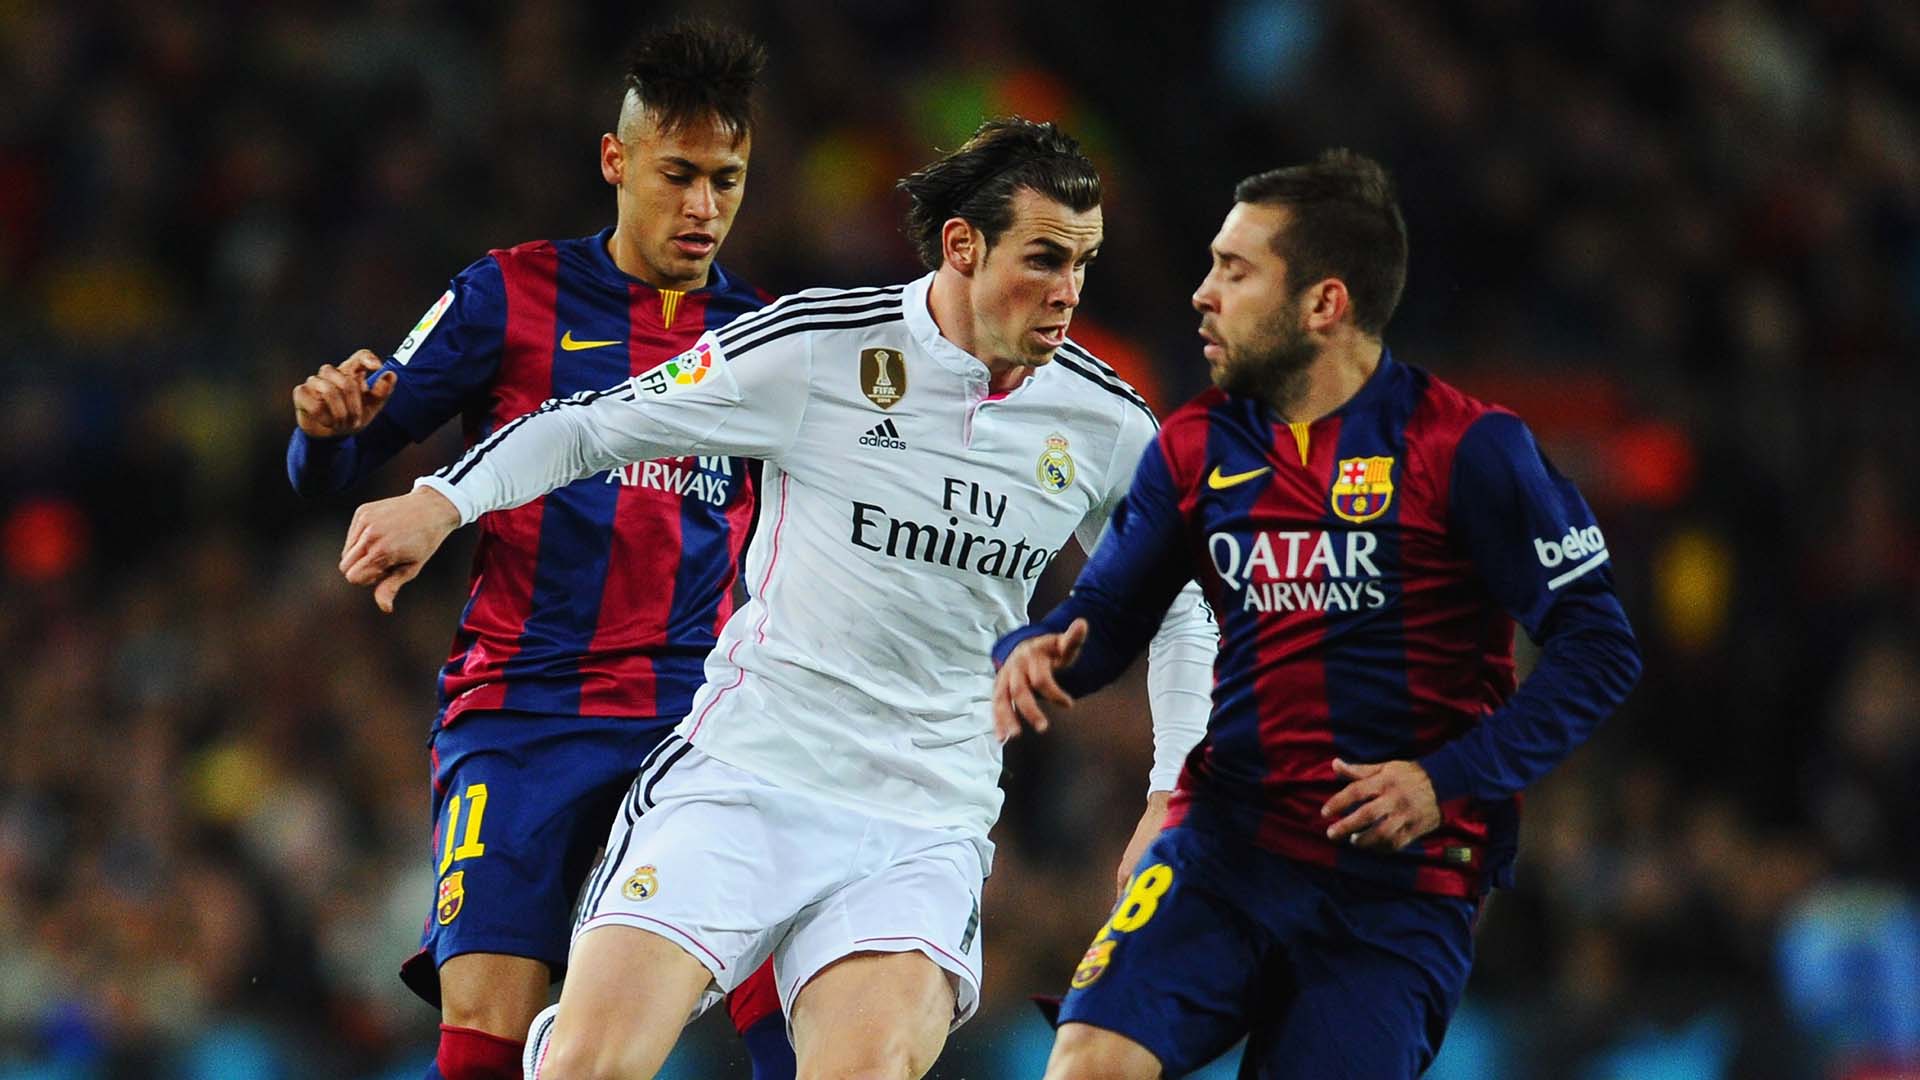 El FC Barcelona vs Real Madrid se disputará el próximo 3 de diciembre en el estadio Camp Nou